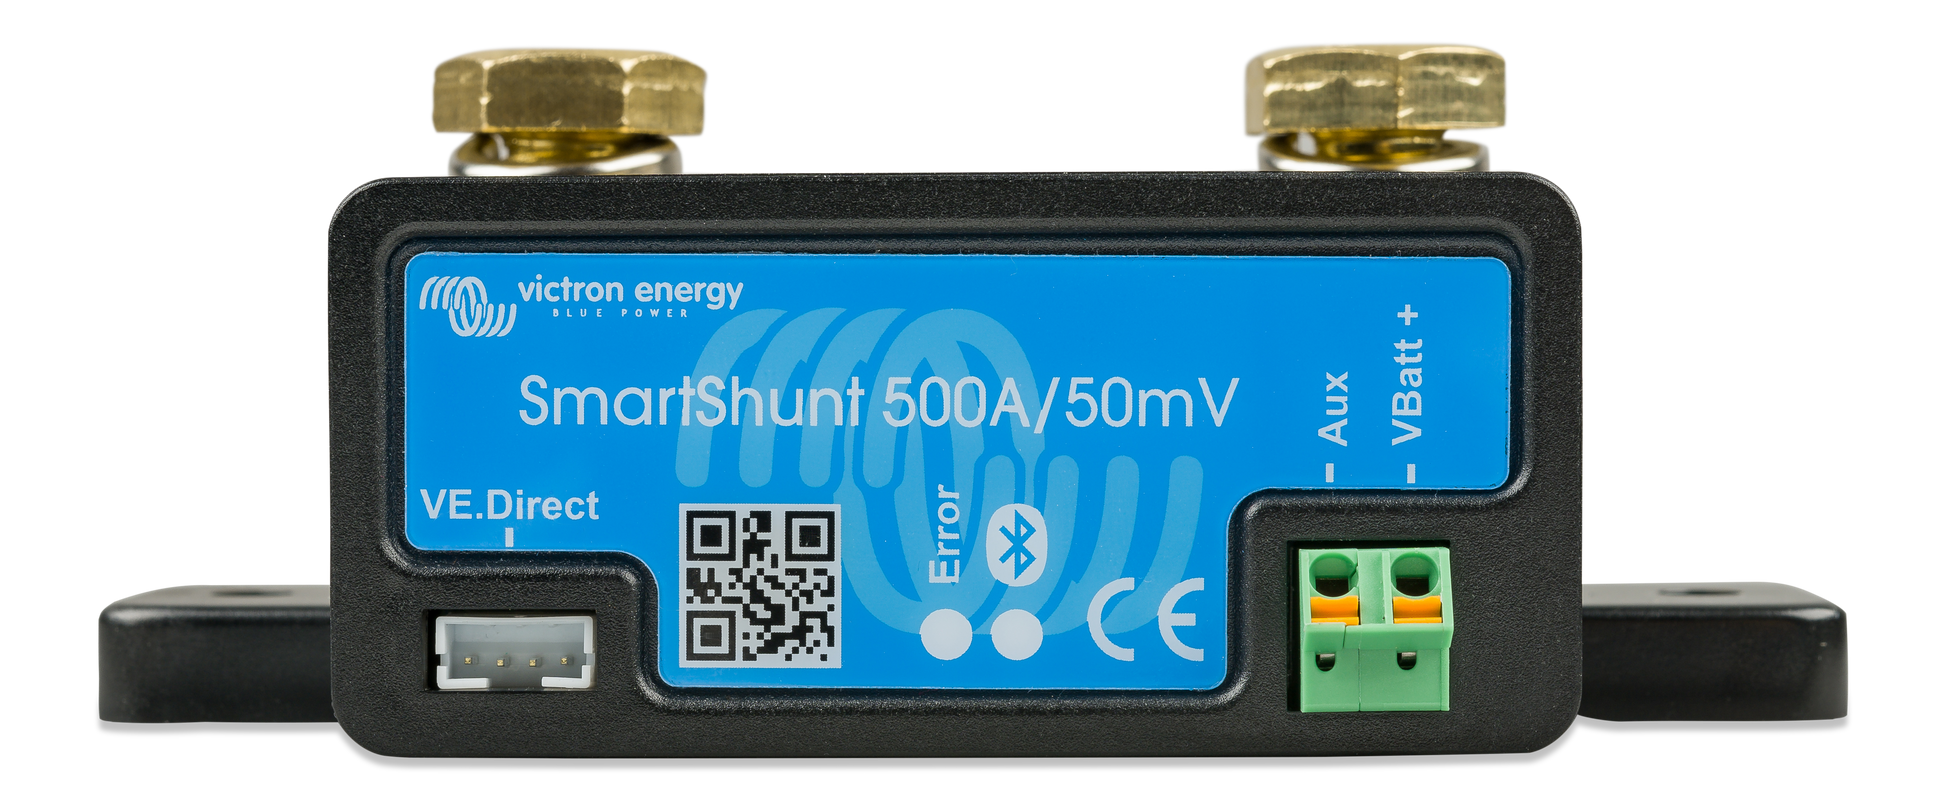 Victron - SmartShunt 500A, Batteriövervakare - Husbilsvloggen